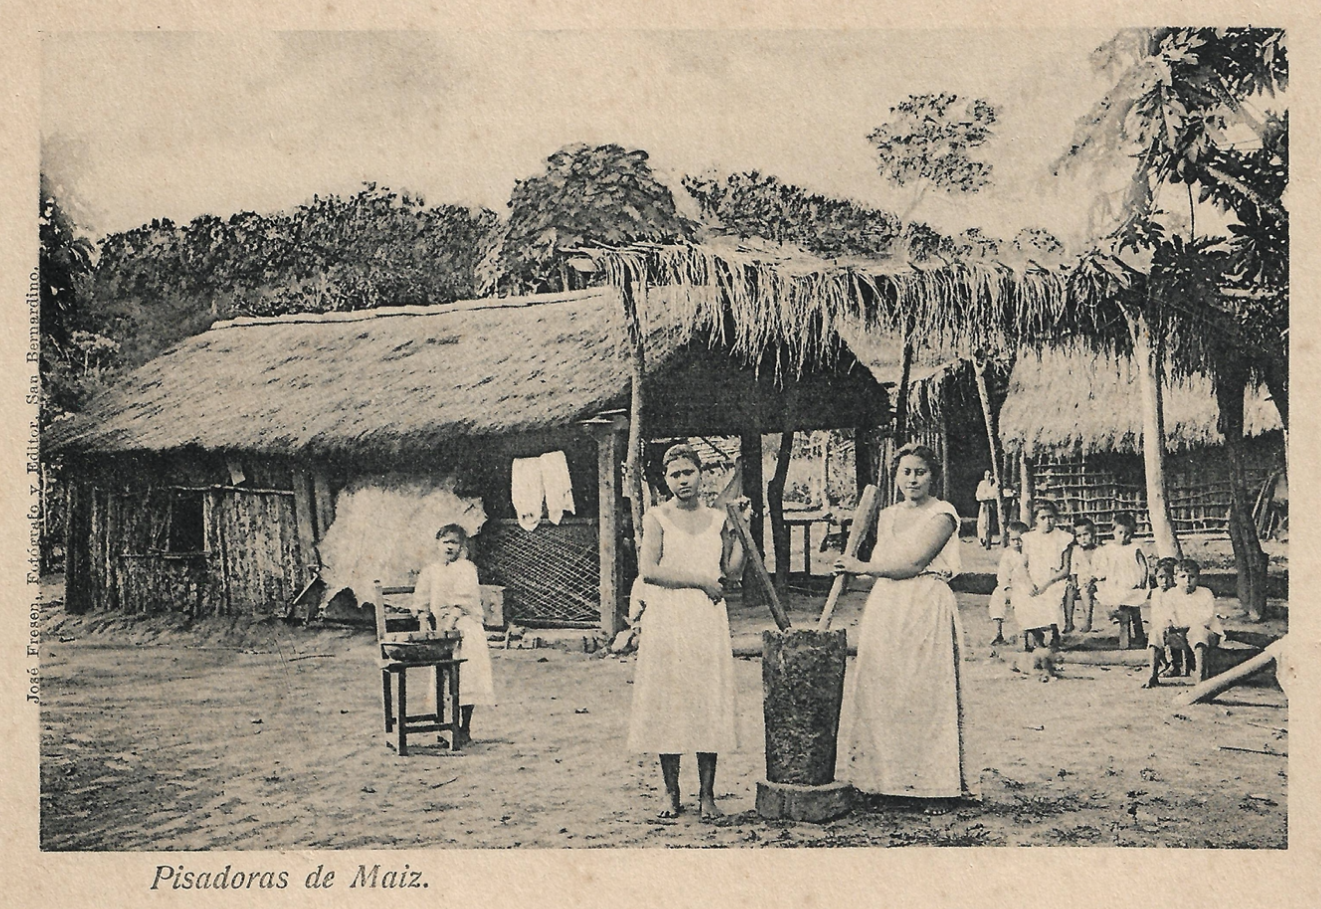 Mujeres pisando maíz. Postal de José Fresen. Colección del autor.